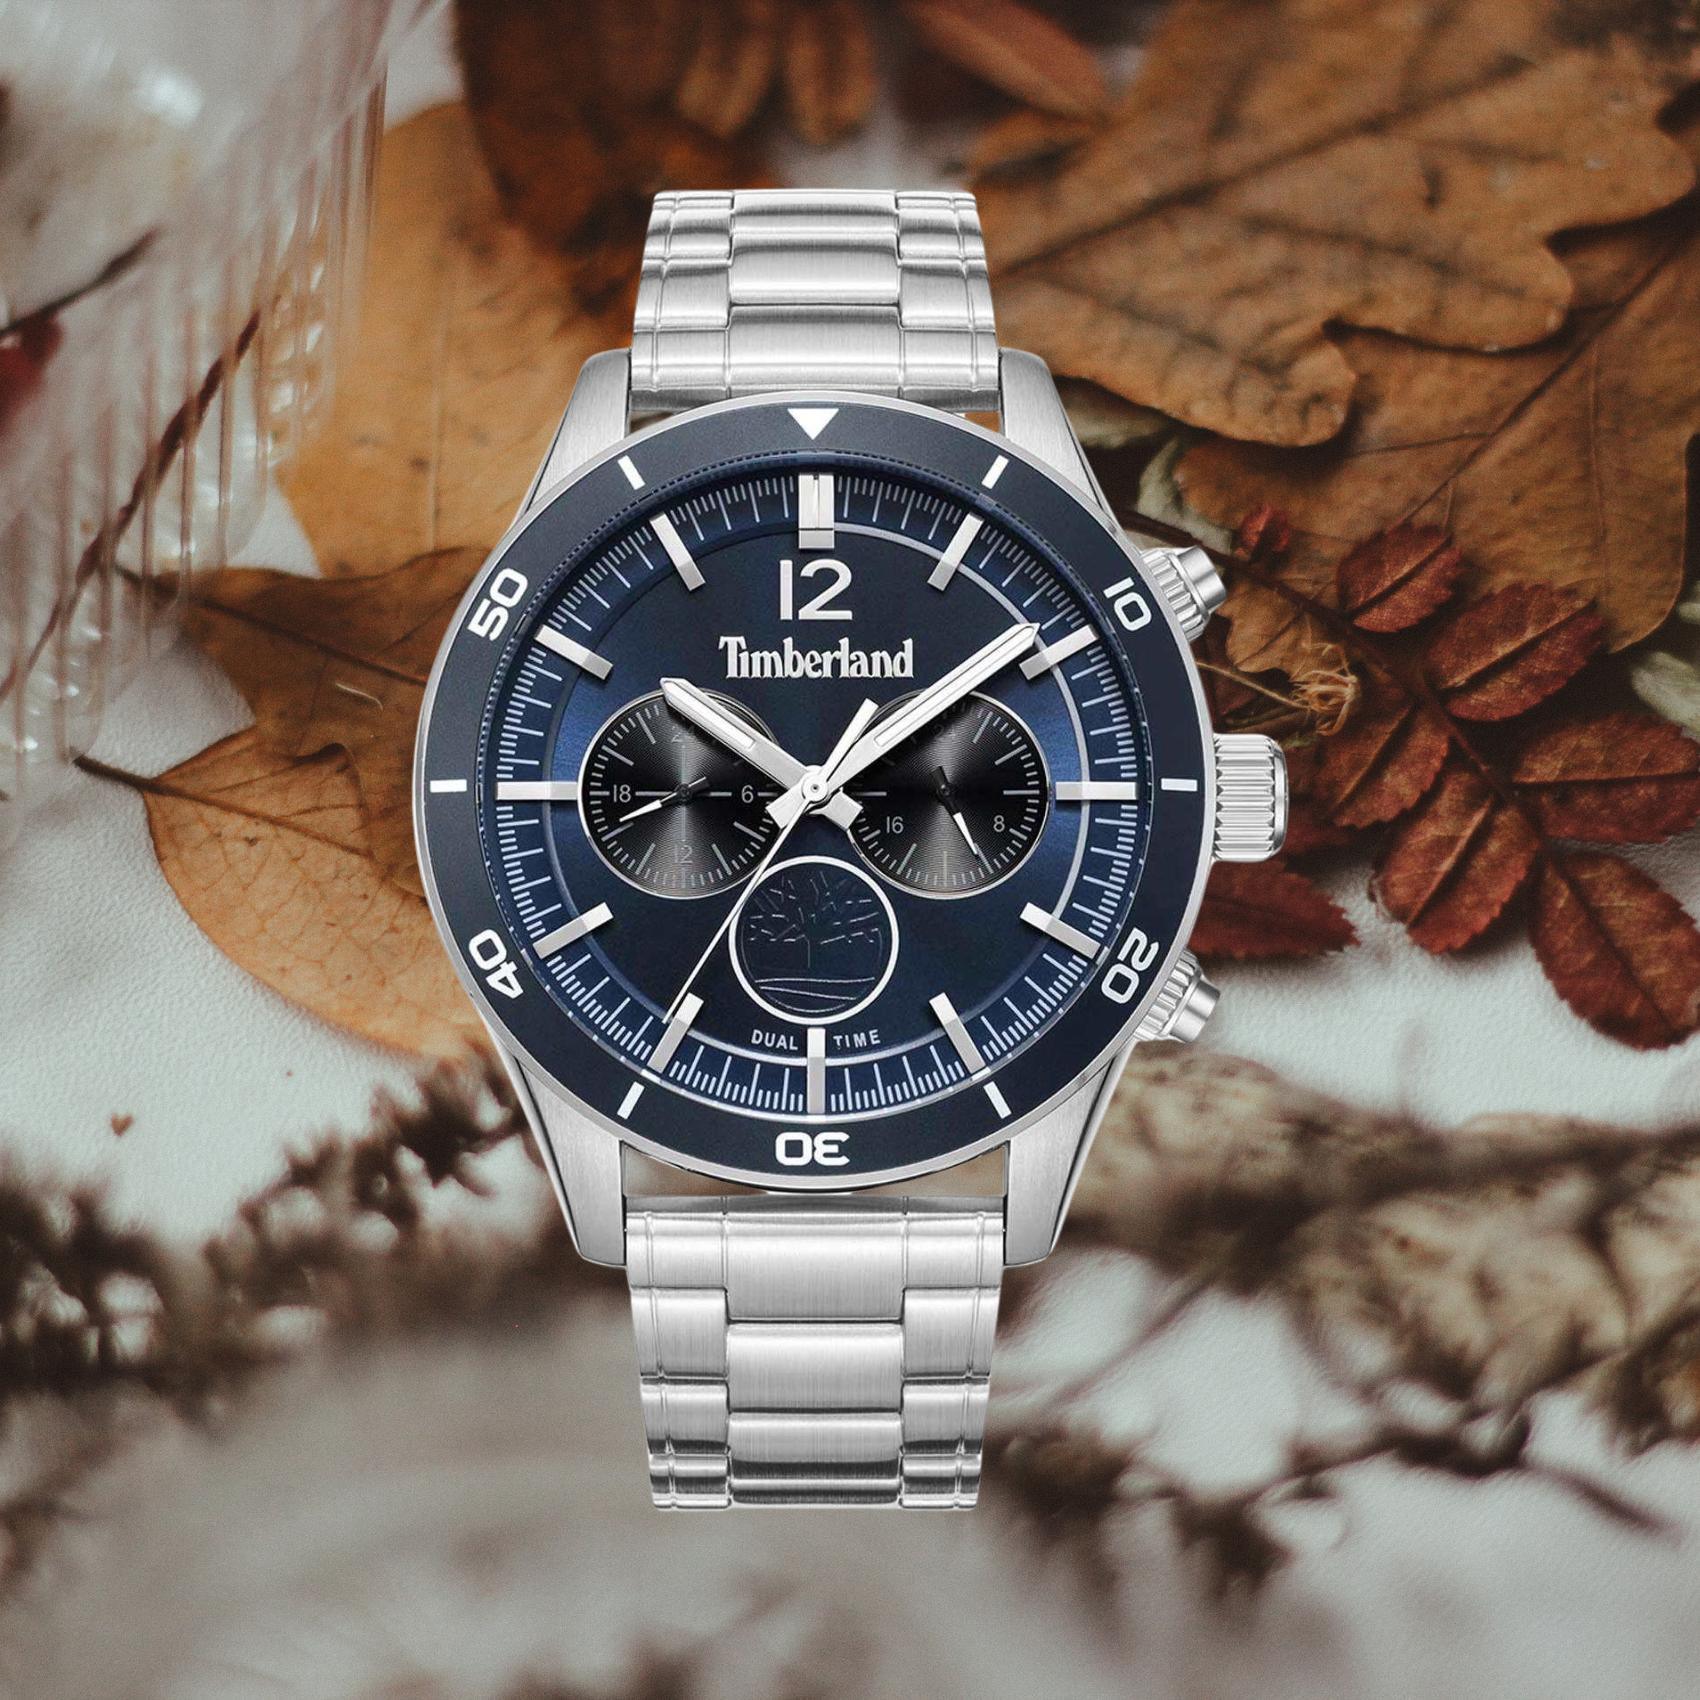 Αντρικό ρολόι Timberland Ashmont TDWGK2230905 Dual Time με ασημί ατσάλινο μπρασελέ και μπλε καντράν διαμέτρου 46mm με ημερομηνία.